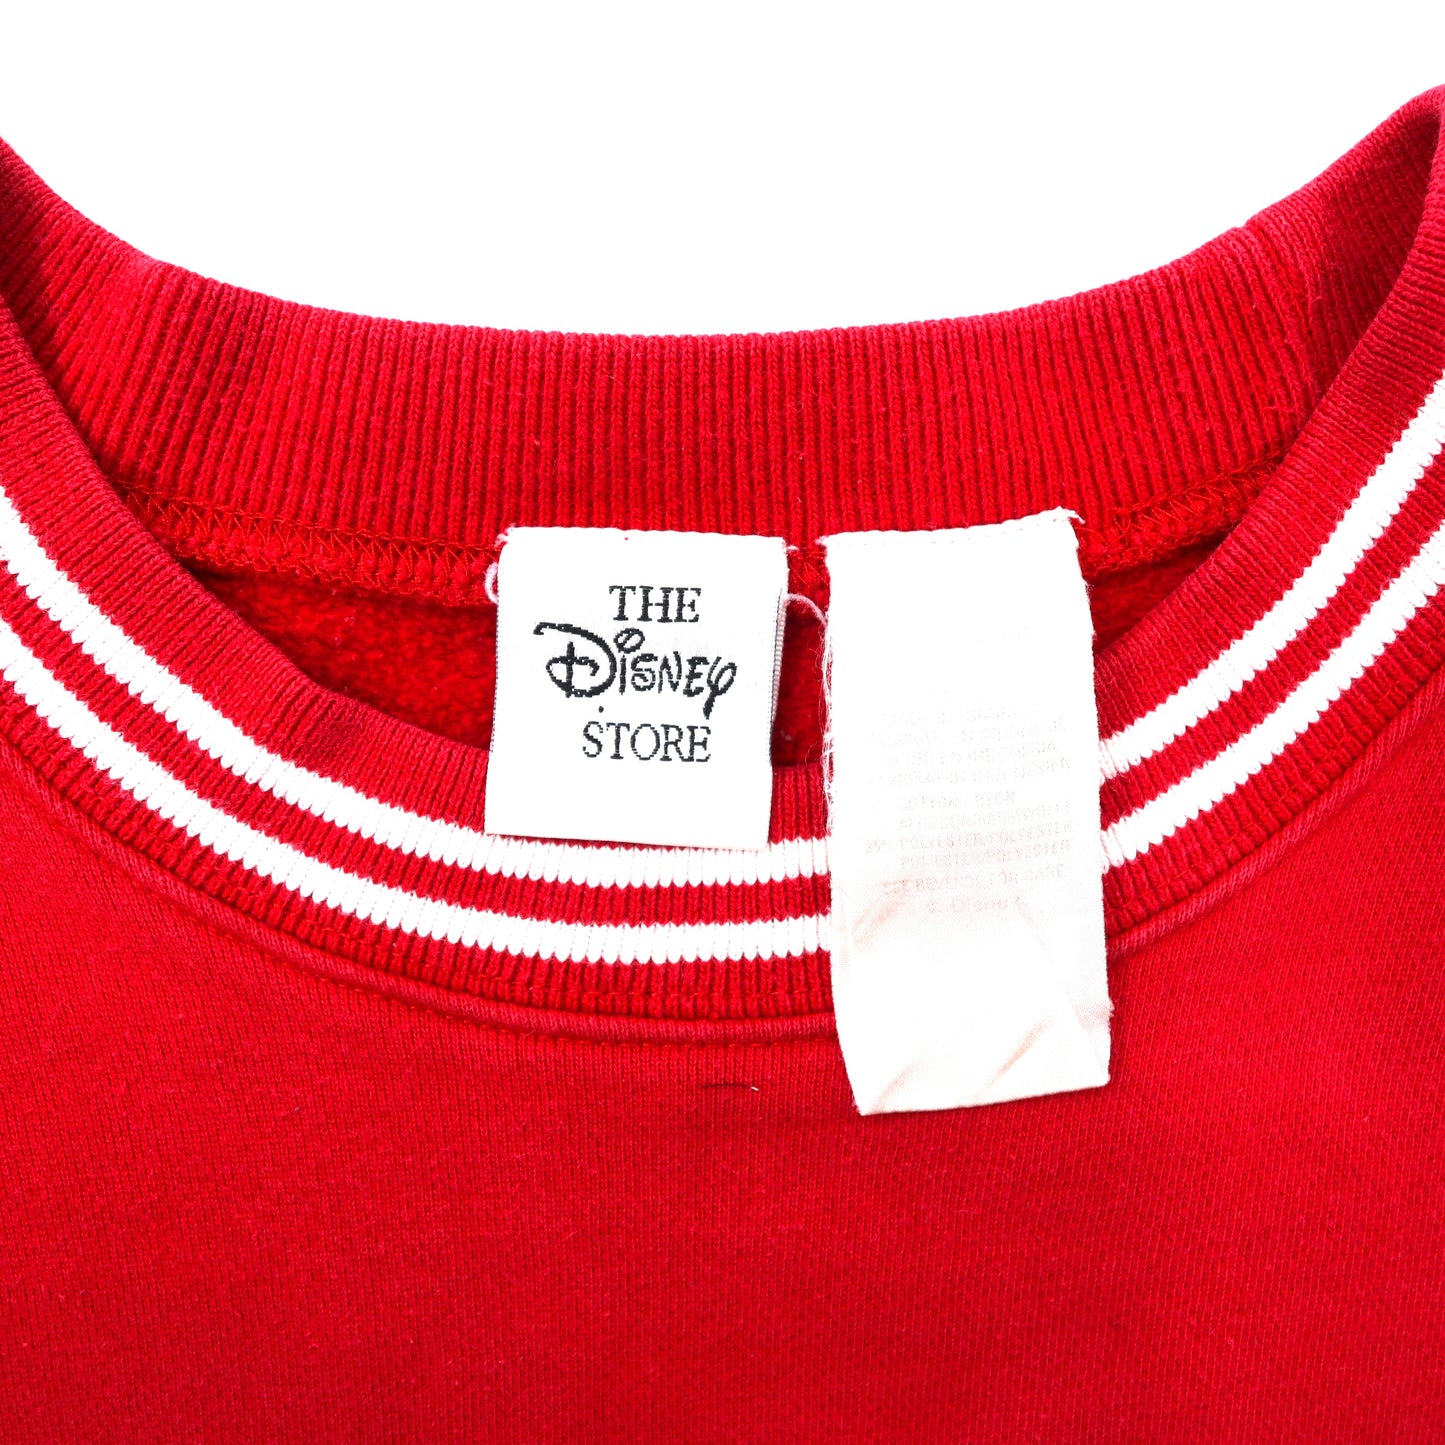 THE Disney STORE リブラインスウェット L レッド コットン MICKEY MOUSE ミッキーマウス 刺繍 90年代